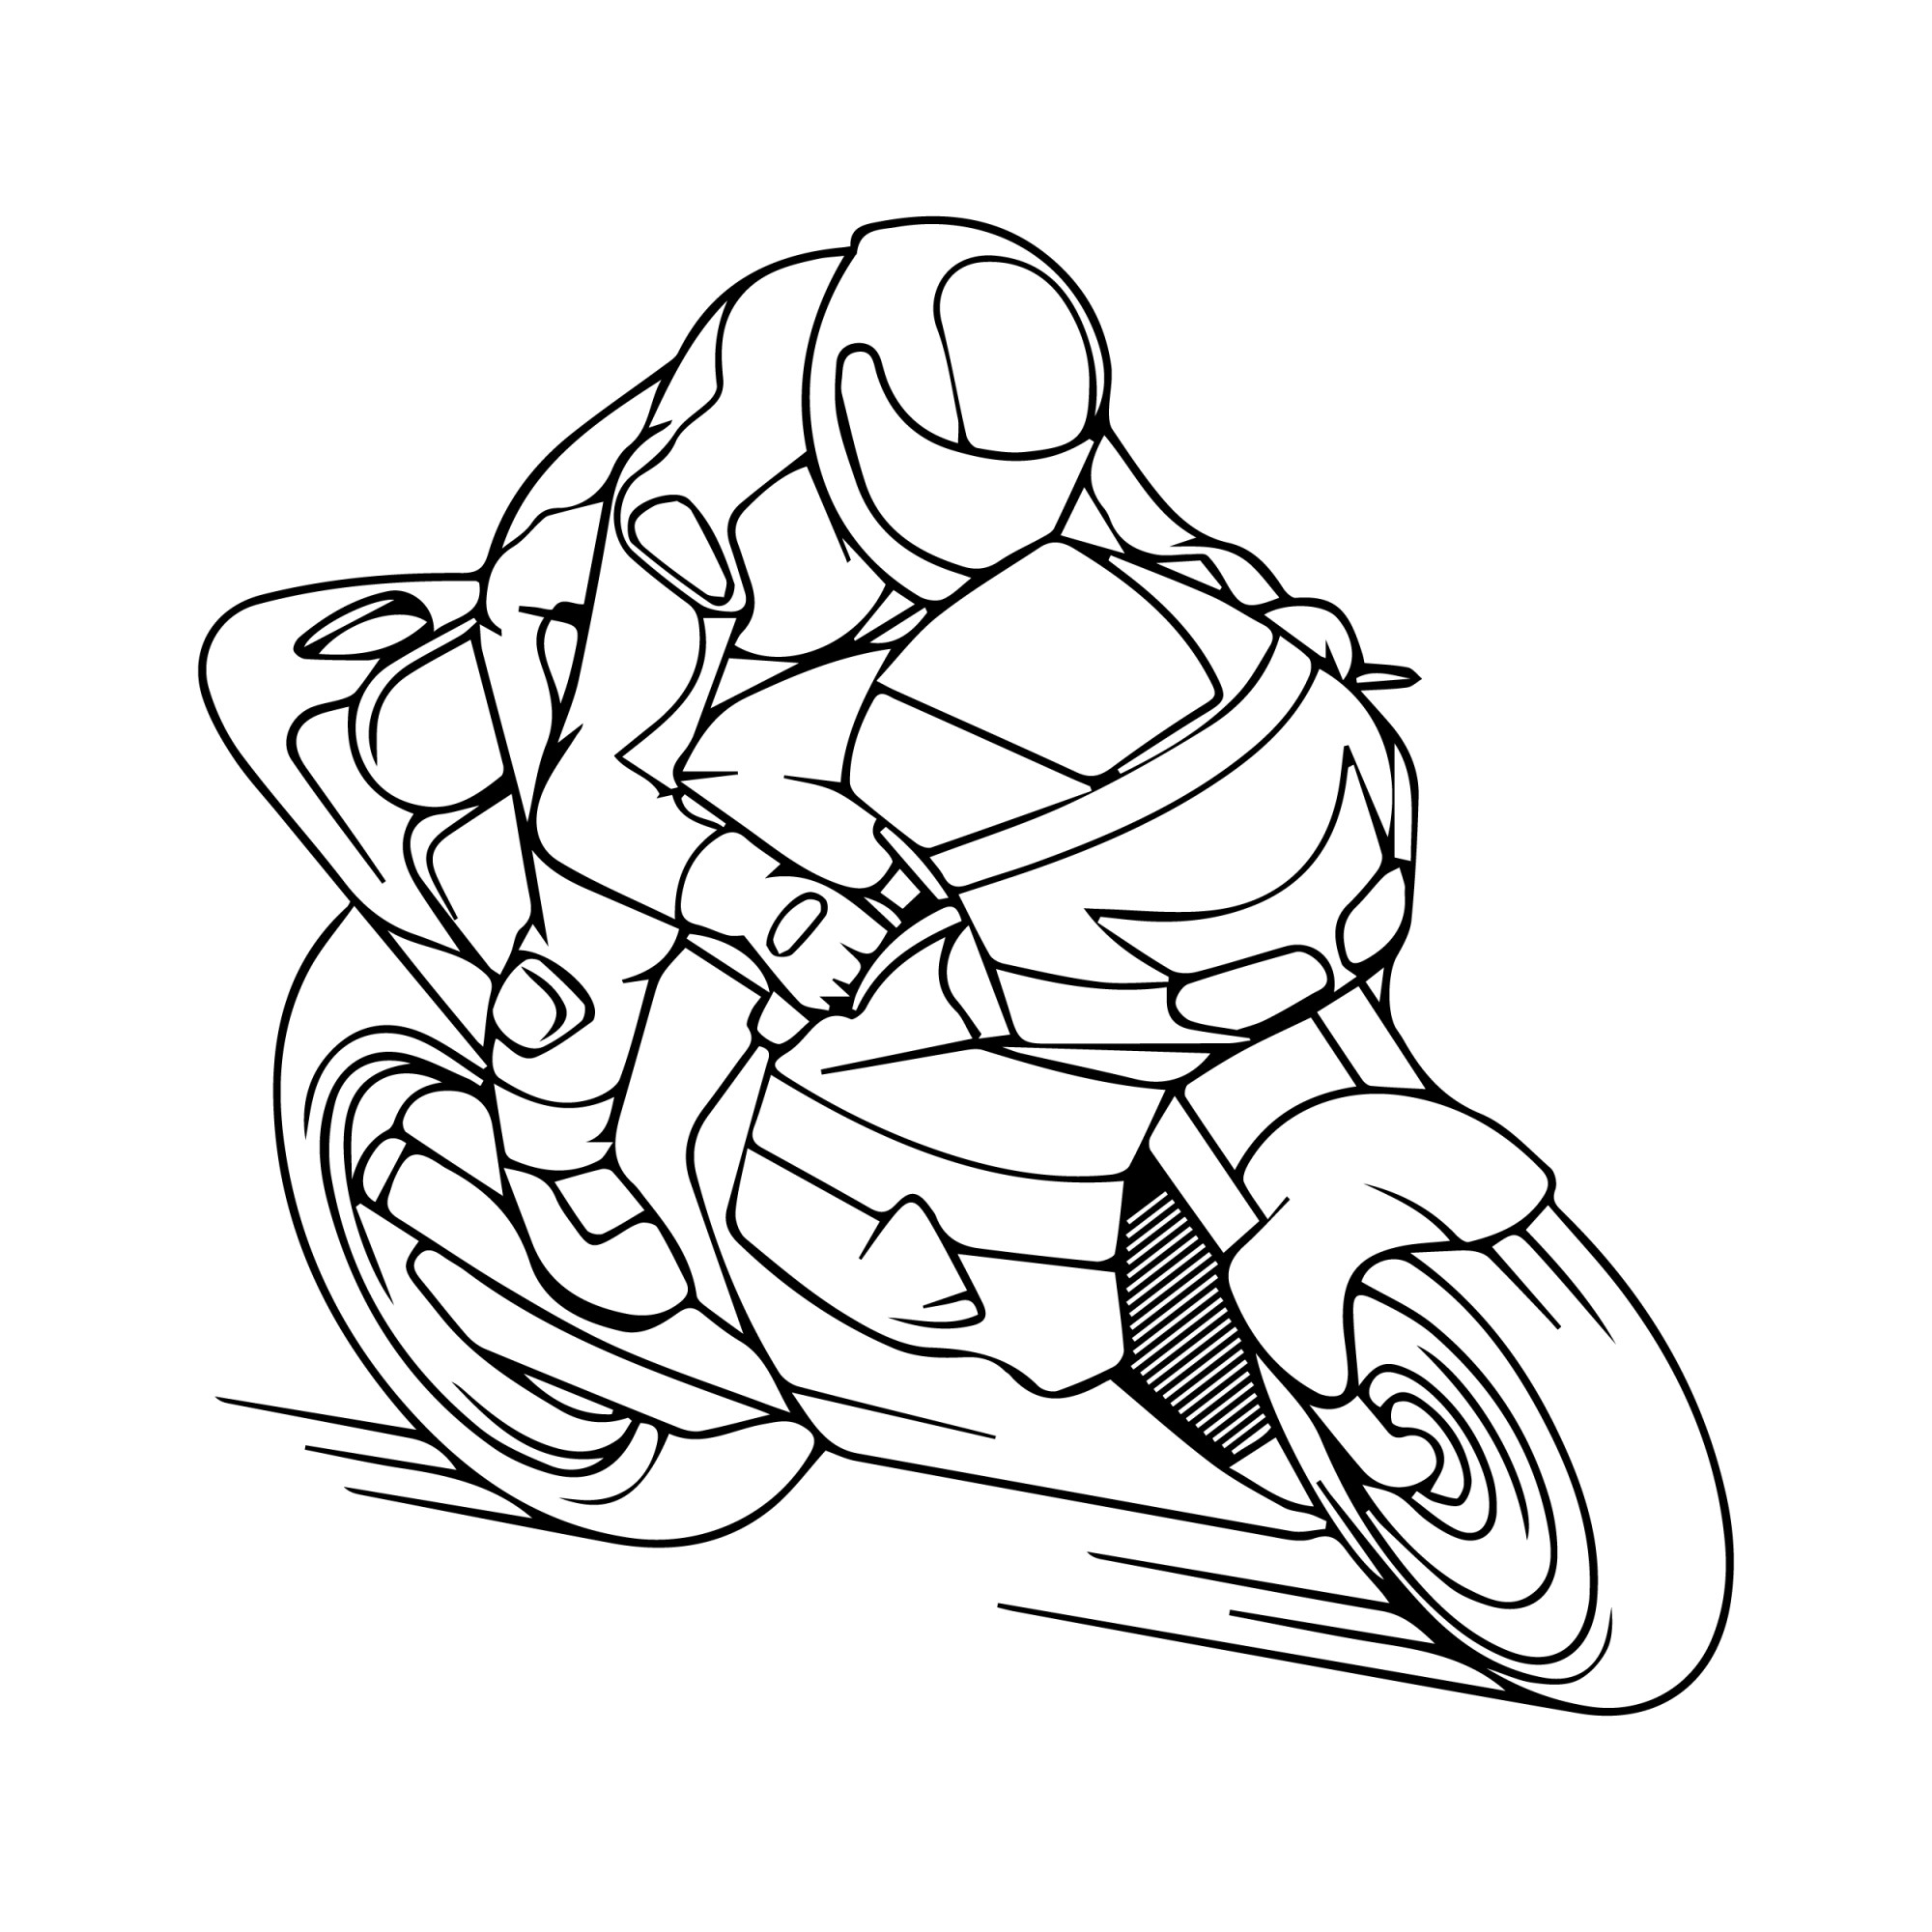 Раскраска для детей: гоночный мотоцикл на треке